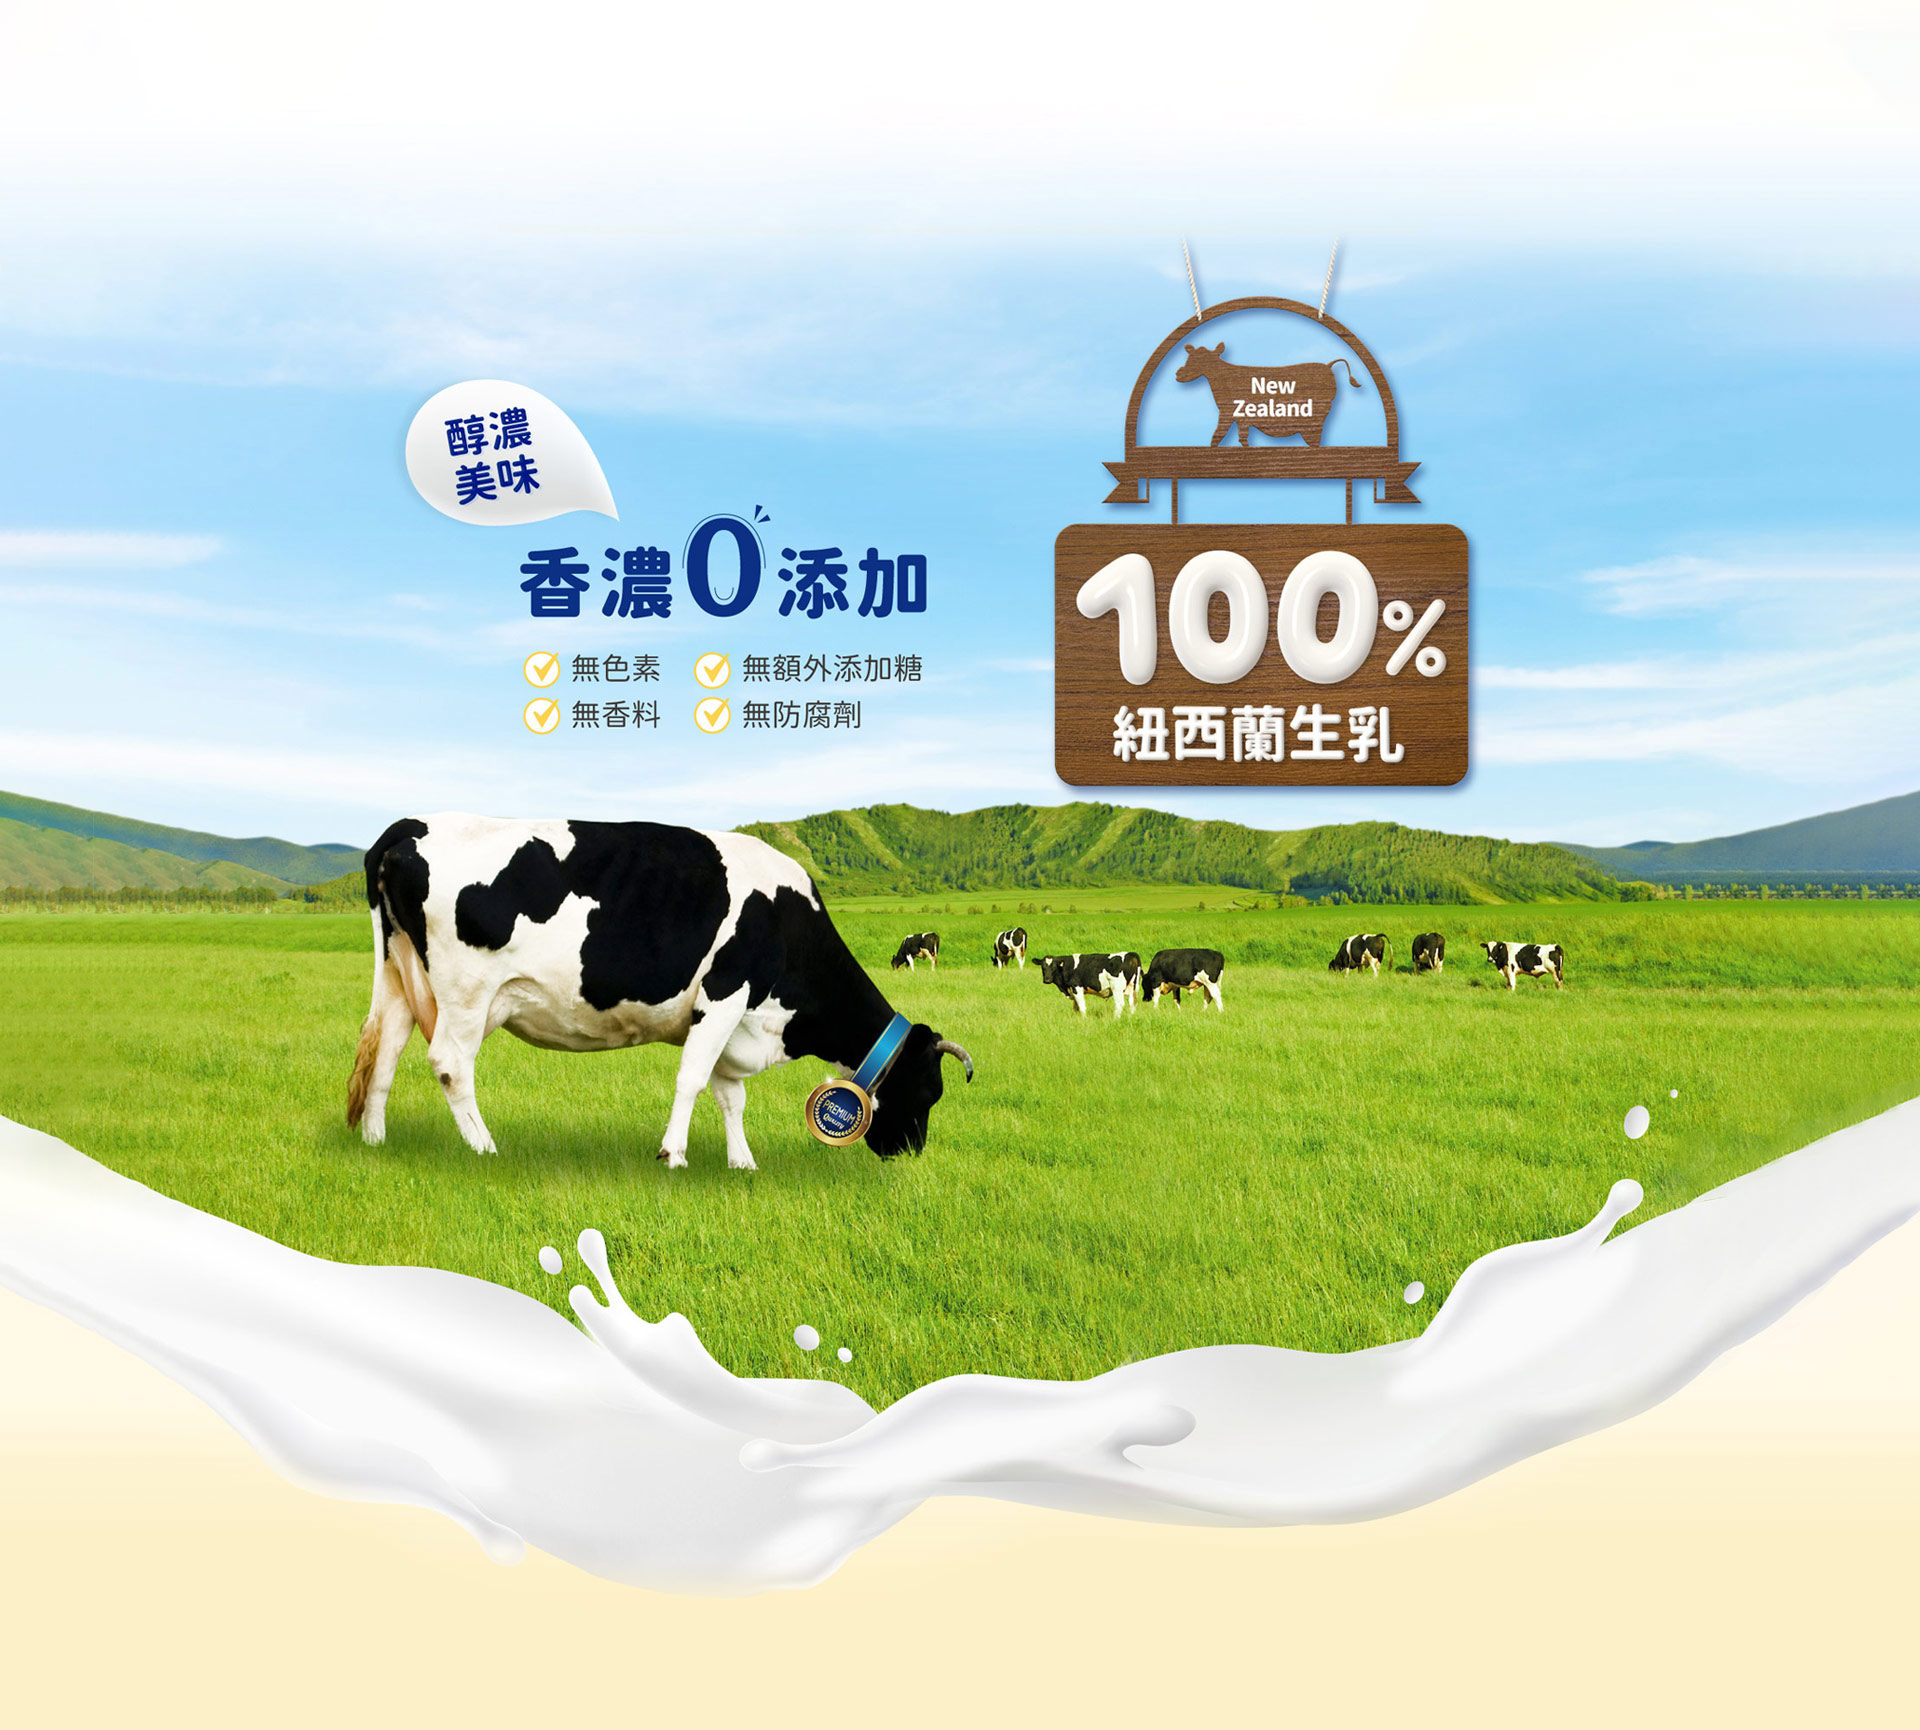 100%紐西蘭純淨乳源全脂乳粉